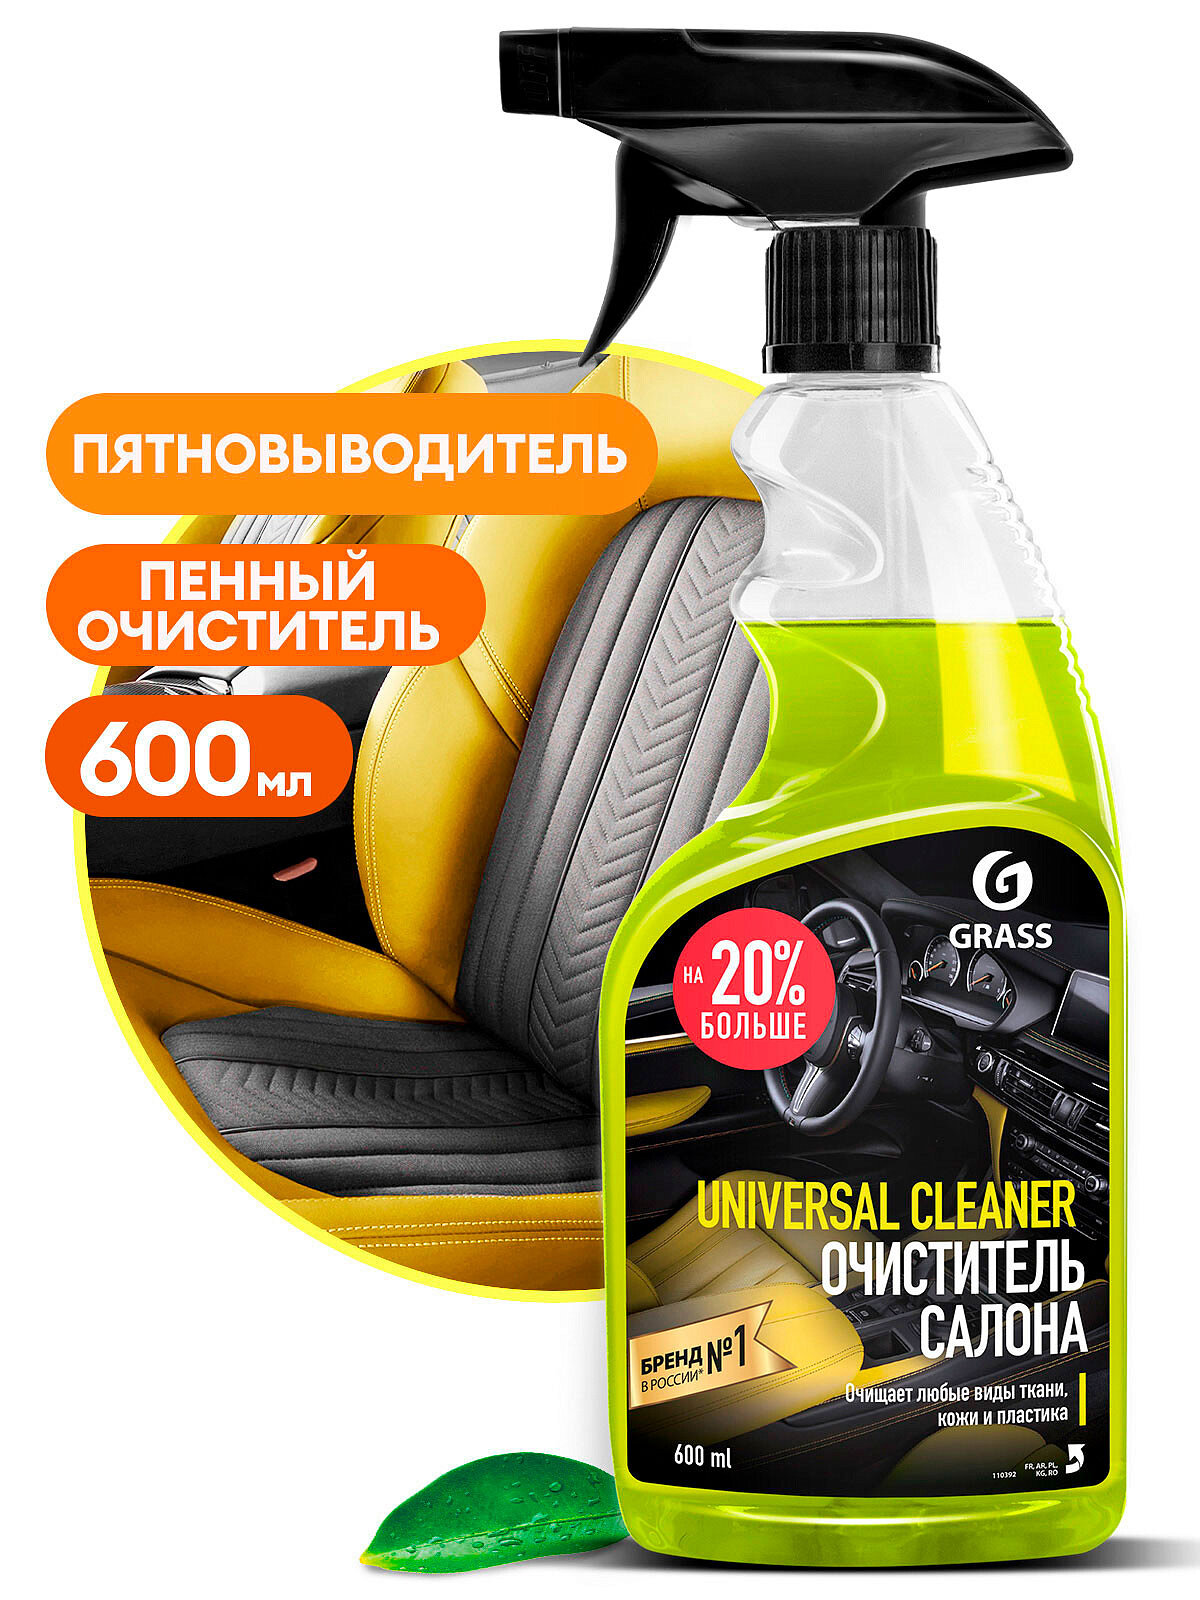 Grass Очиститель салона автомобиля Universal Cleaner (110392), 0.6 л, 0.6 кг, апельсин, салатовый